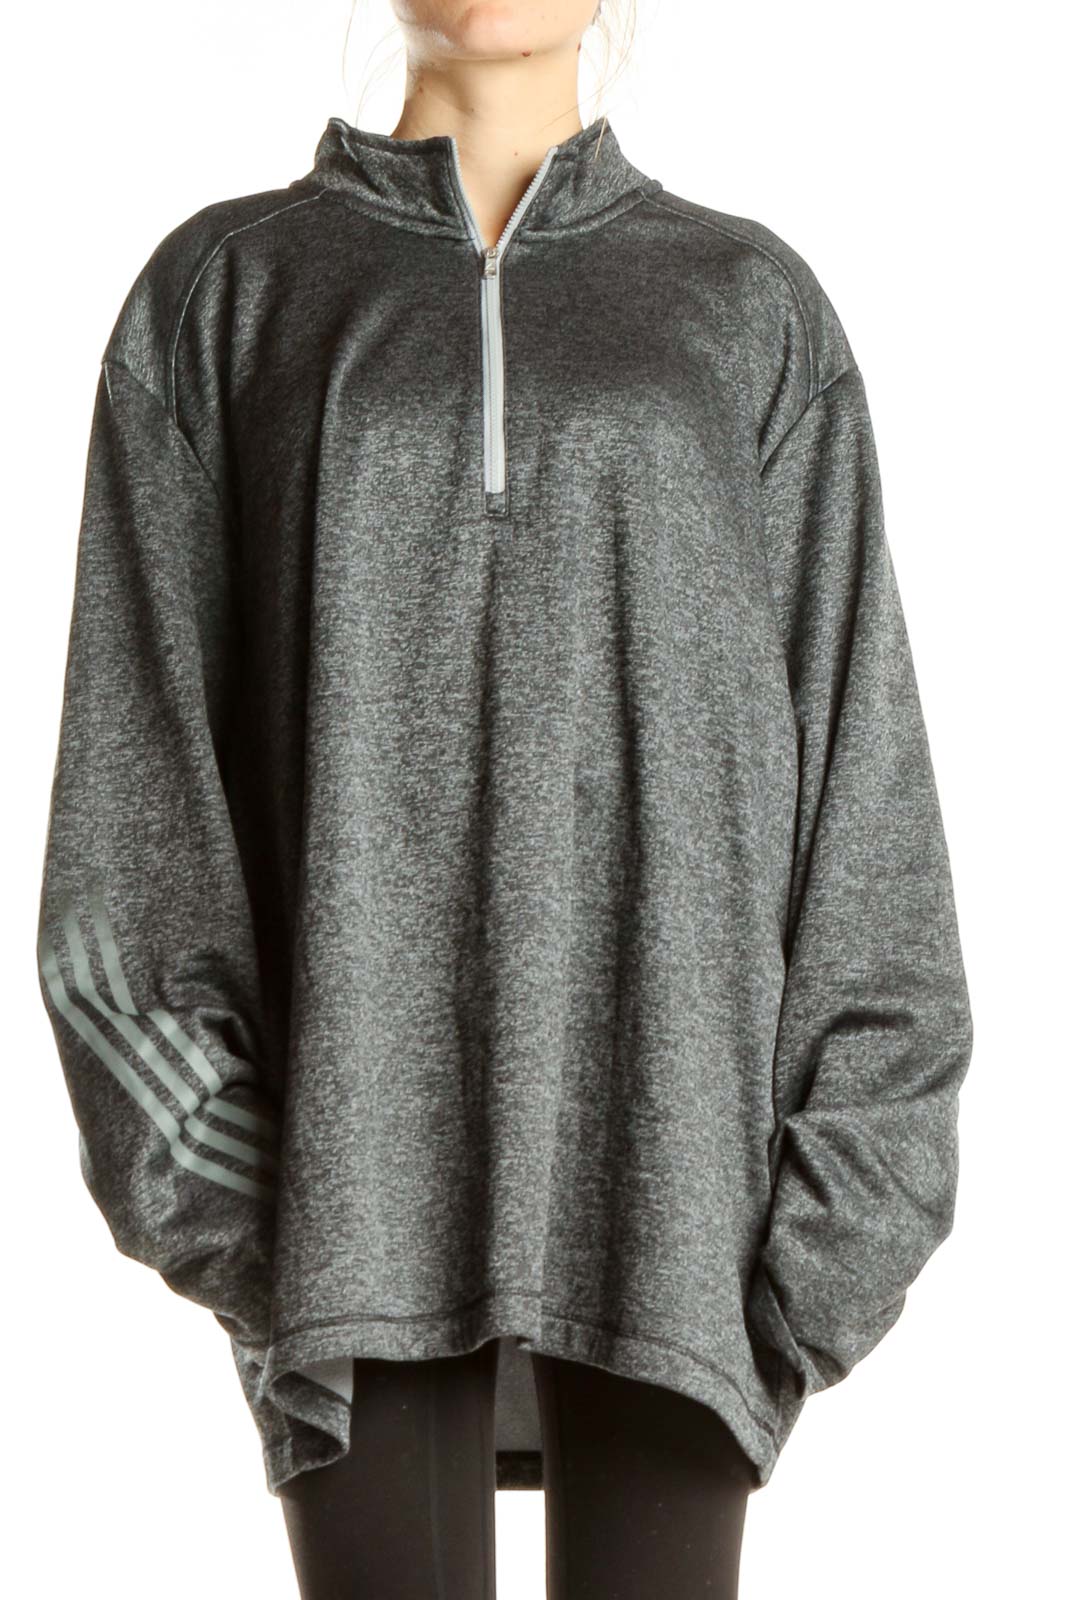 Gray Sweatshirt Front